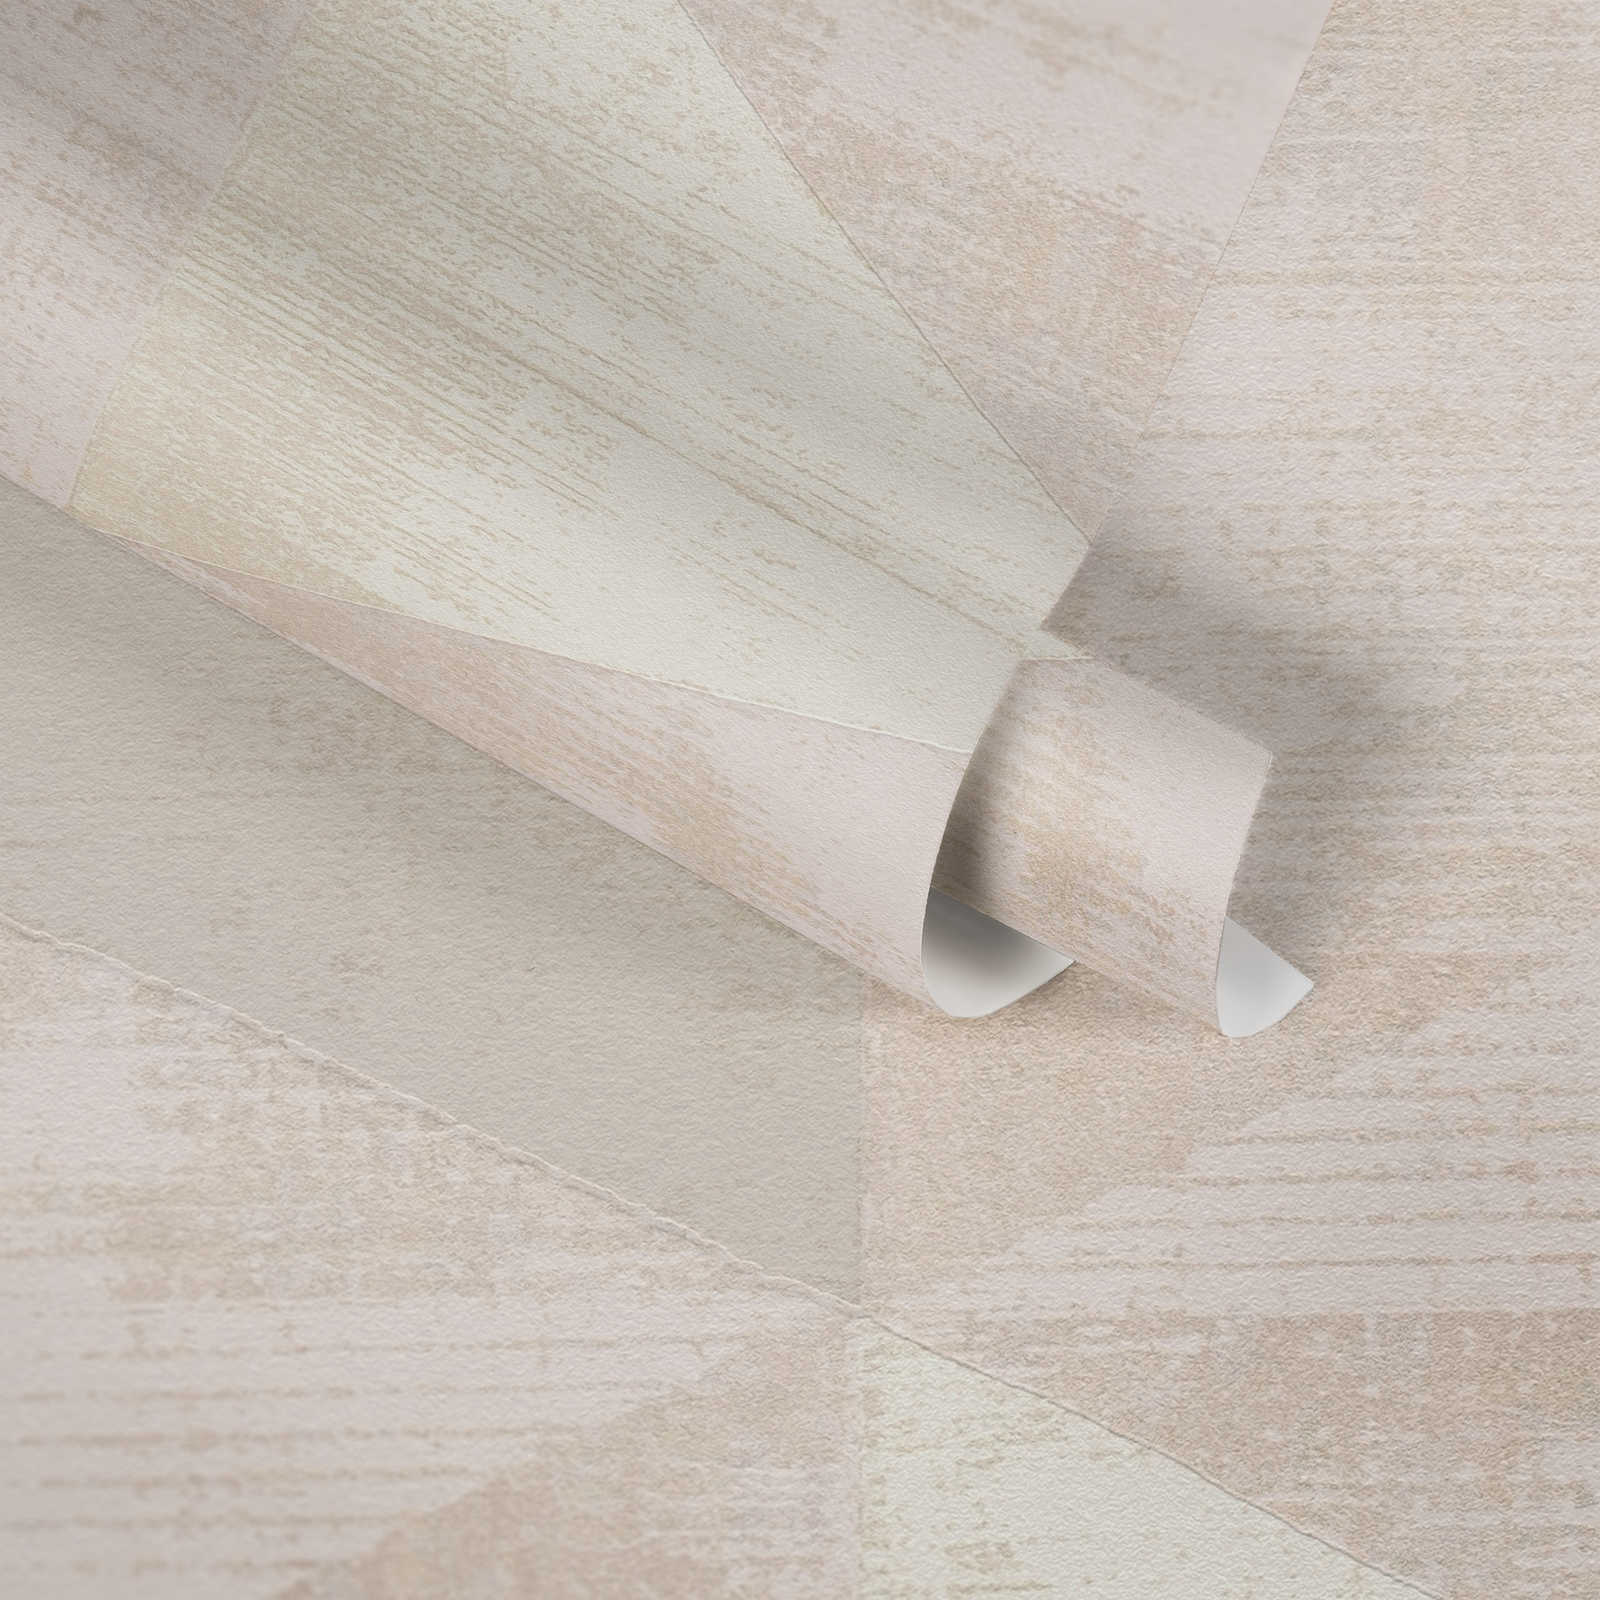             Papel pintado no tejido con acento metálico - metálico, beige, crema
        